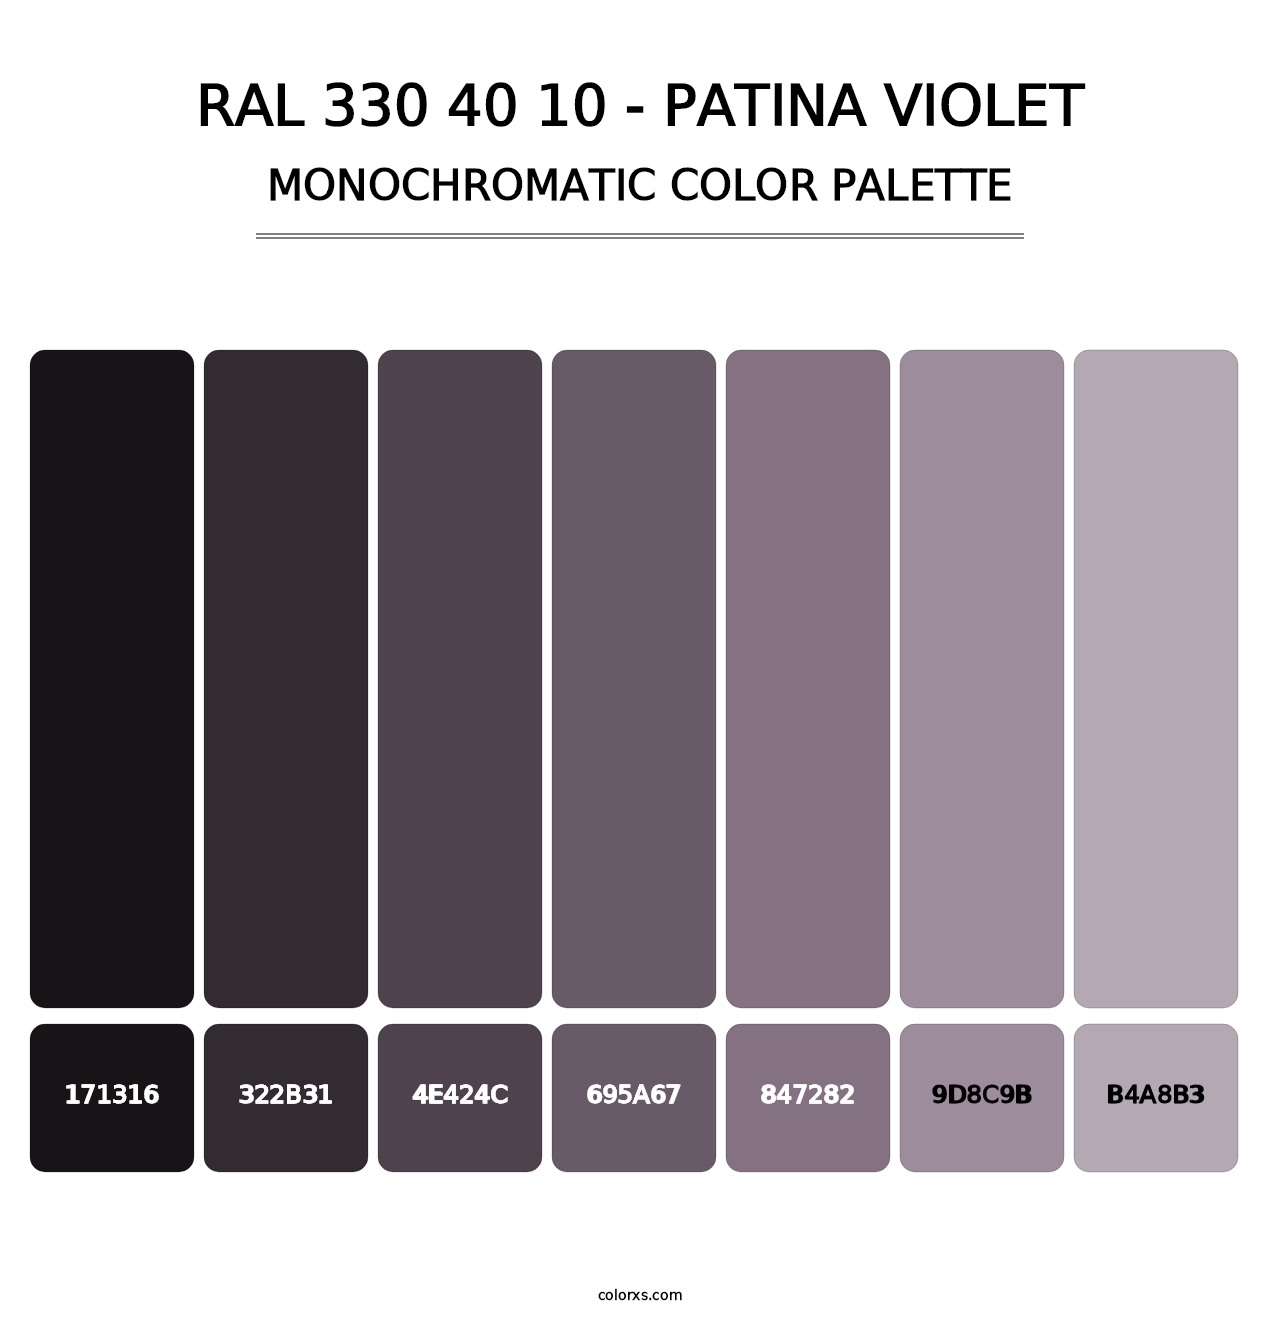 RAL 330 40 10 - Patina Violet - Monochromatic Color Palette